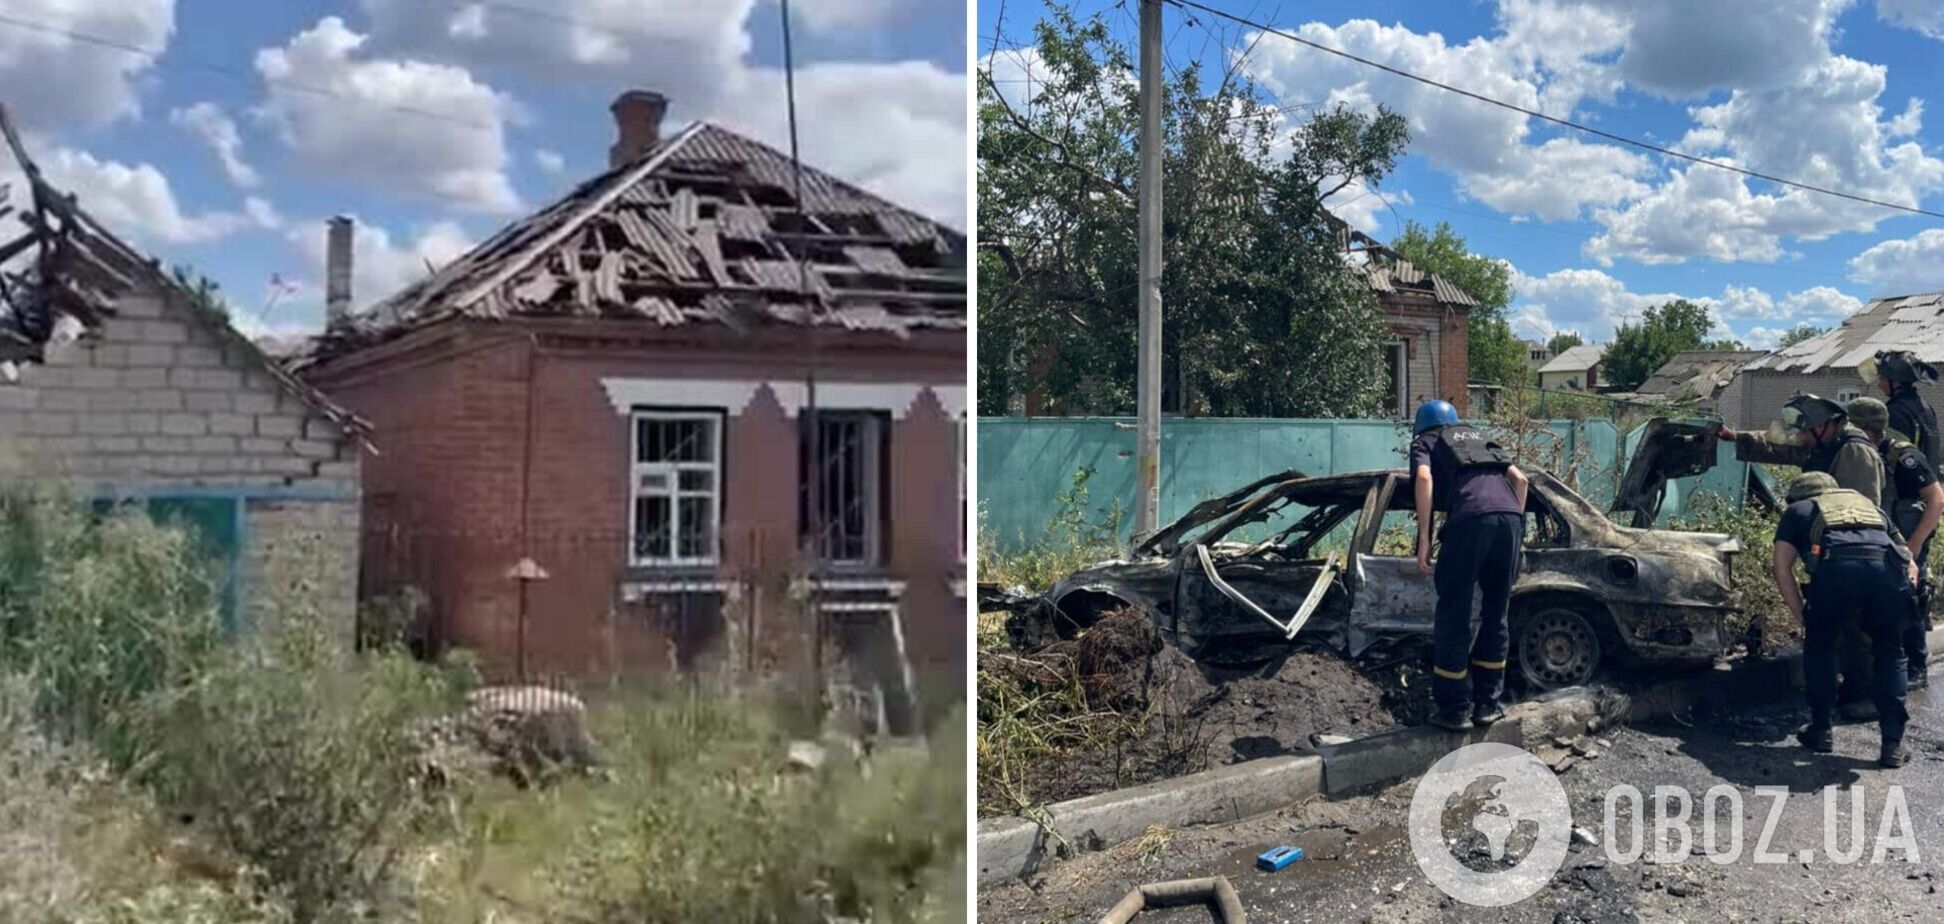 Оккупанты ударили по жилым домам в Славянске, из-под завалов спасатели вытащили тела людей. Фото и видео